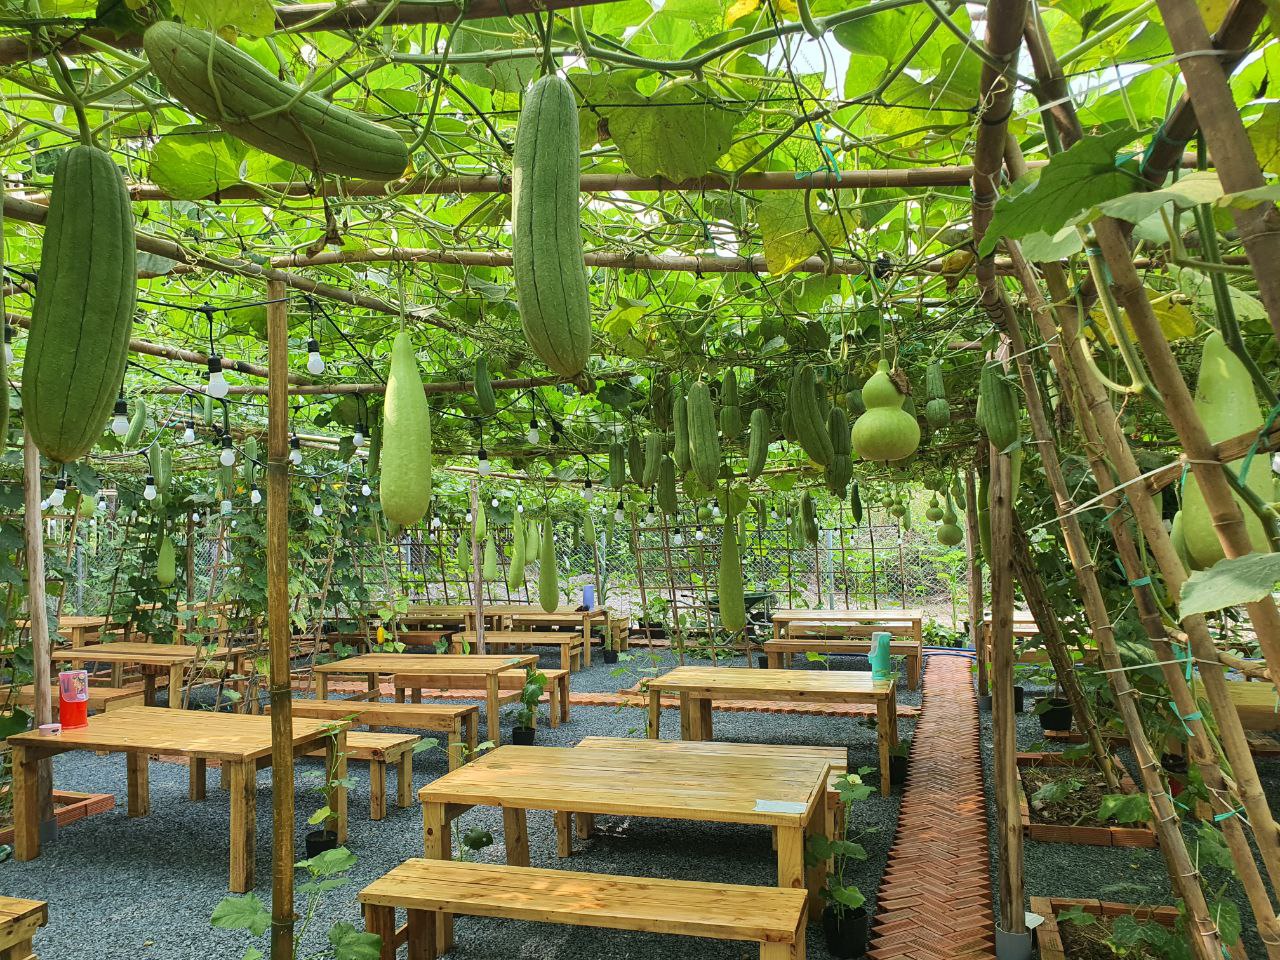 Hồ Lô quán : Mô hình kinh doanh kết hợp với nông nghiệp xanh